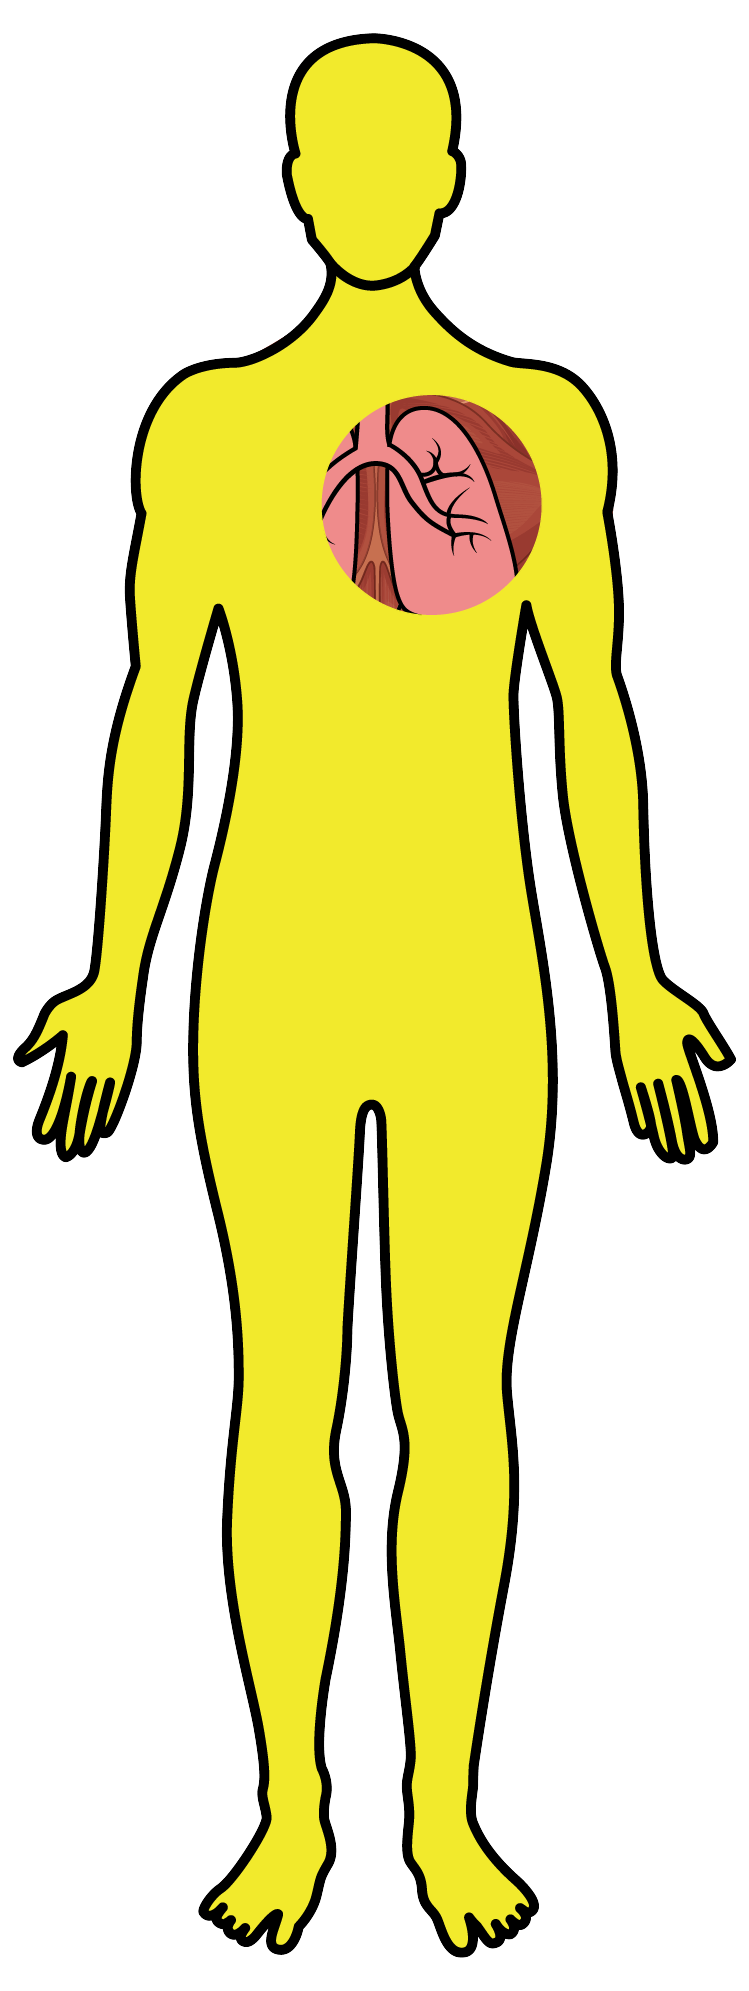 Tuberculose - Desenho corpo